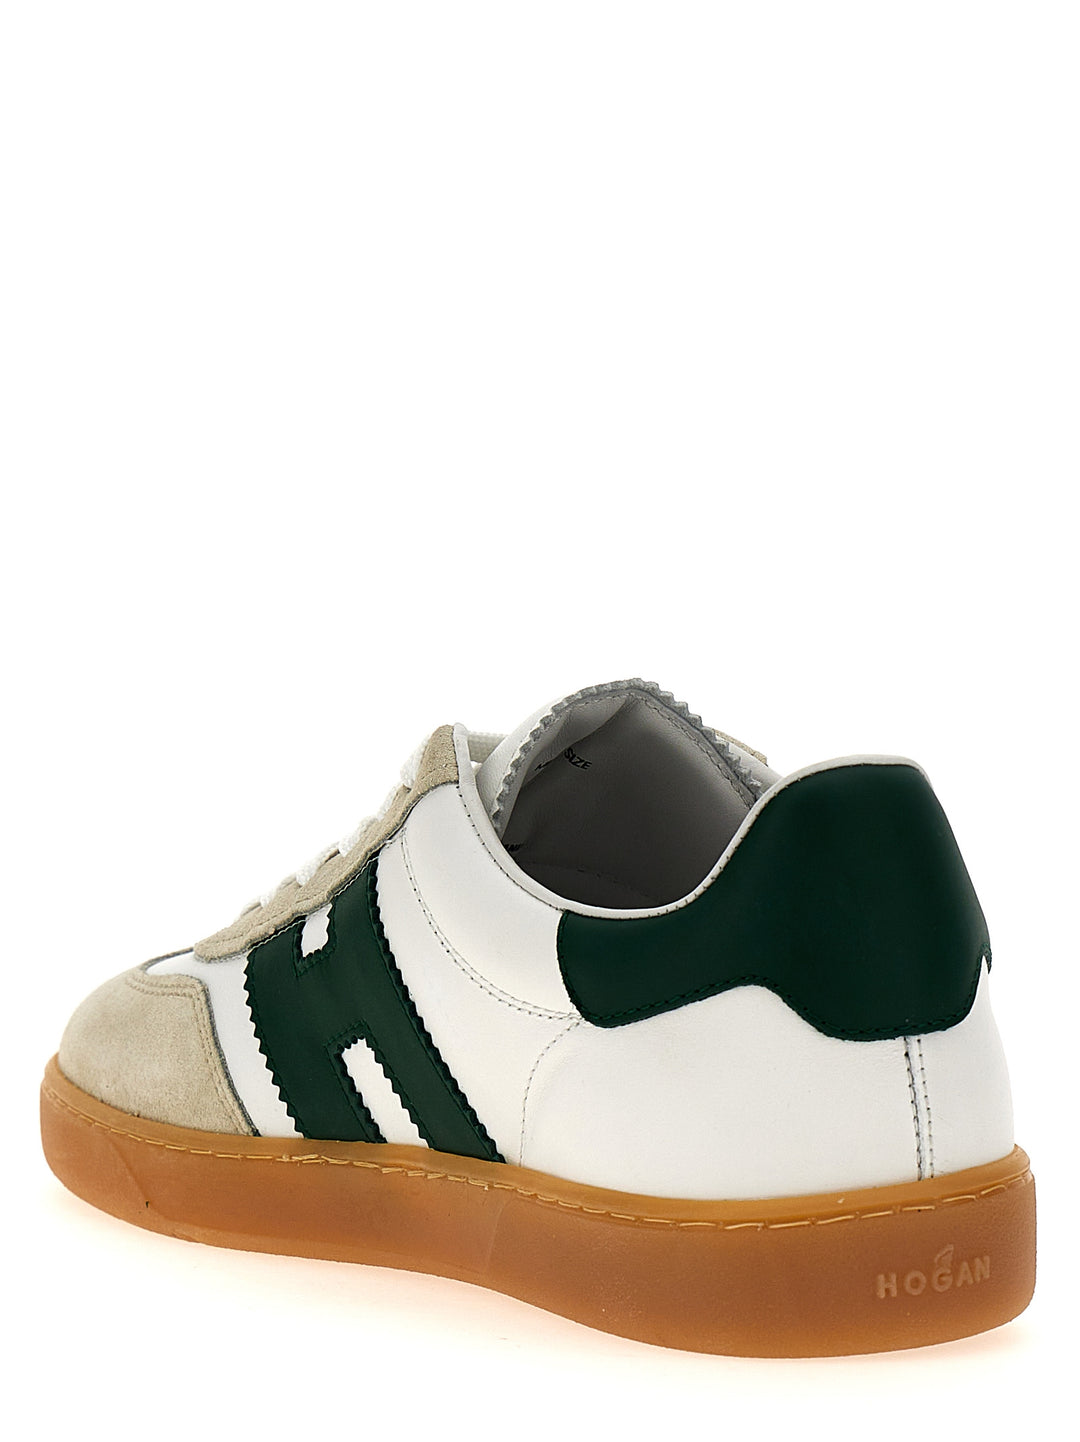 Hogan Cool Sneakers Verde